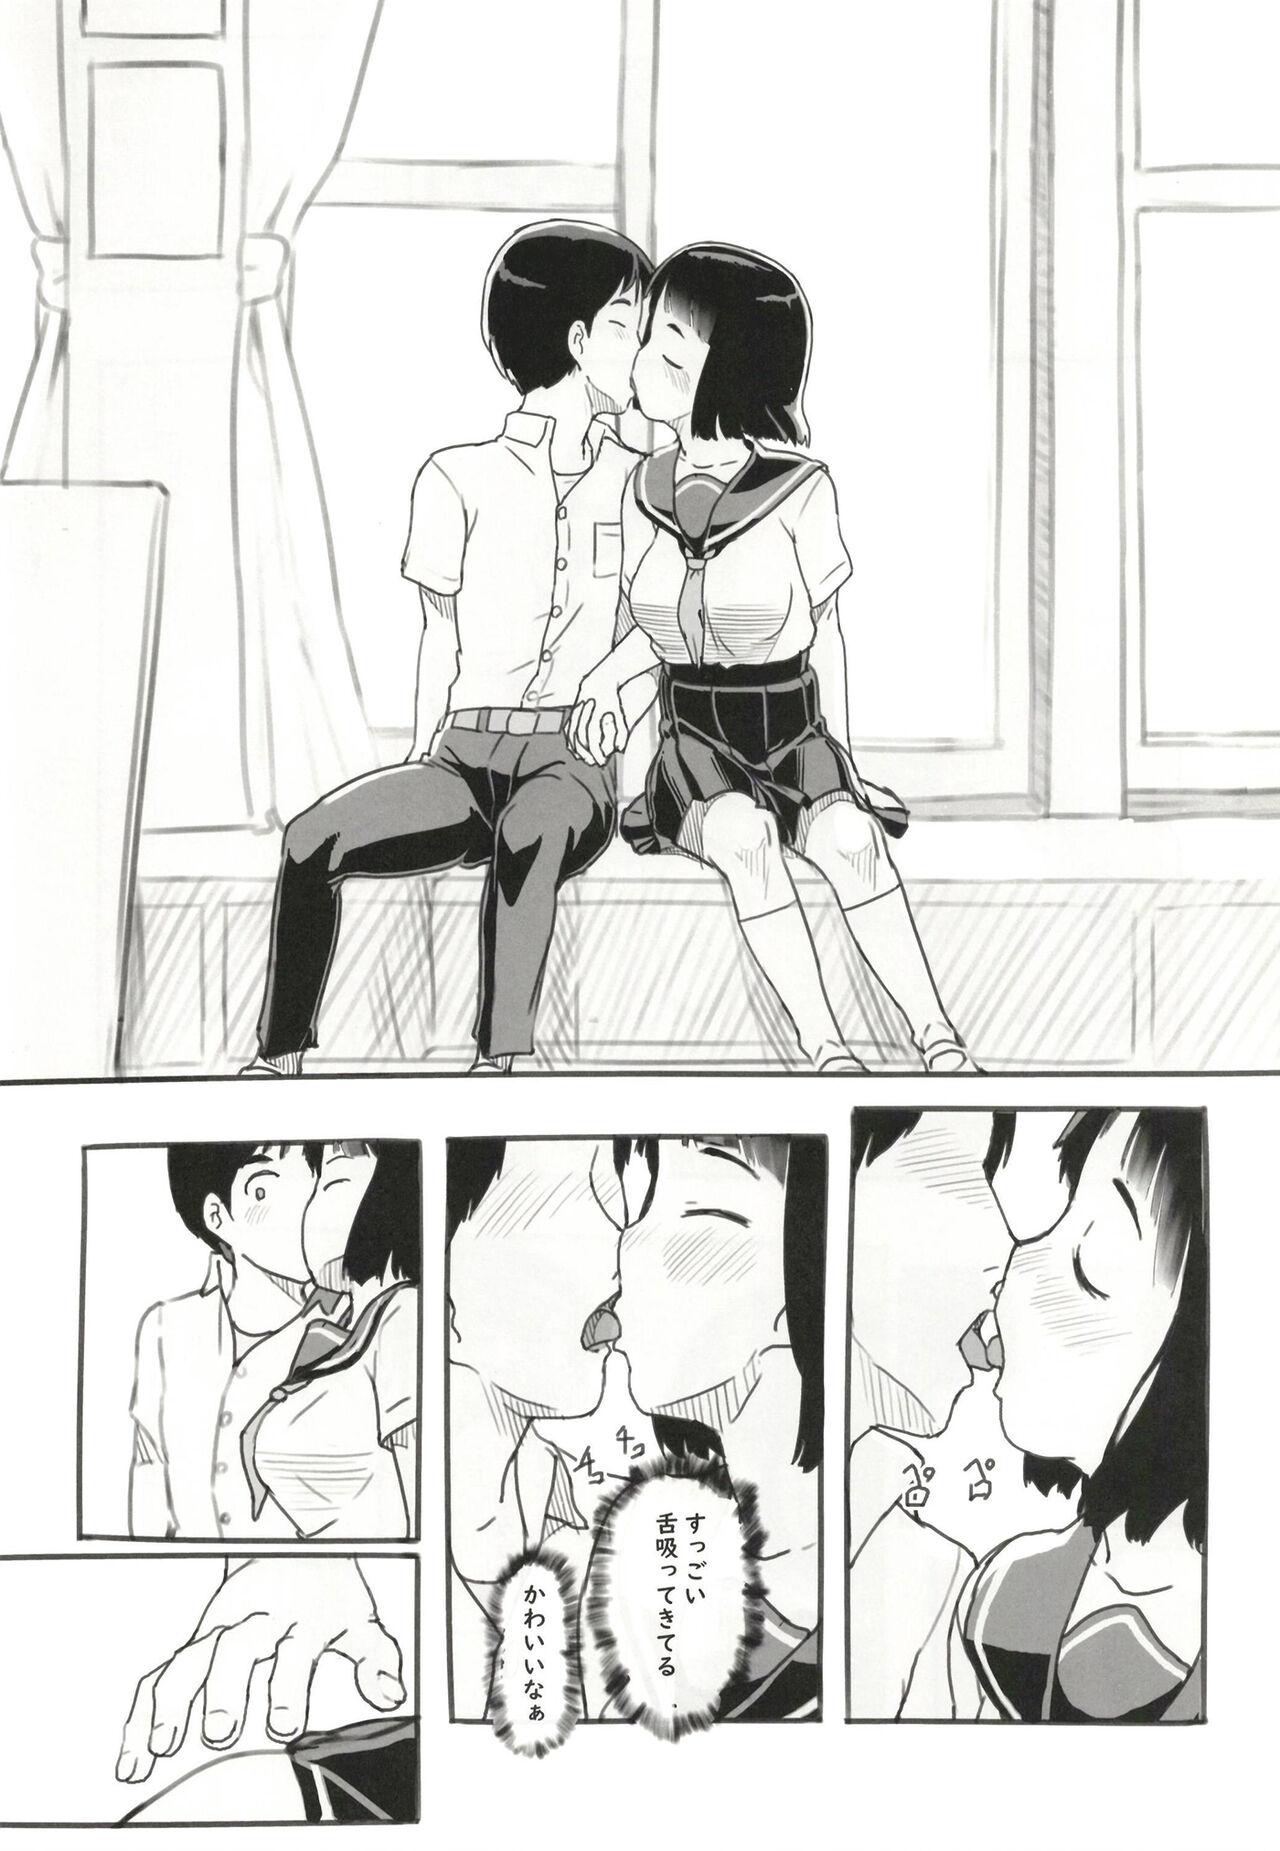 Belly Yume oi kareshi mochi dokyusei - Original Pain - Page 6